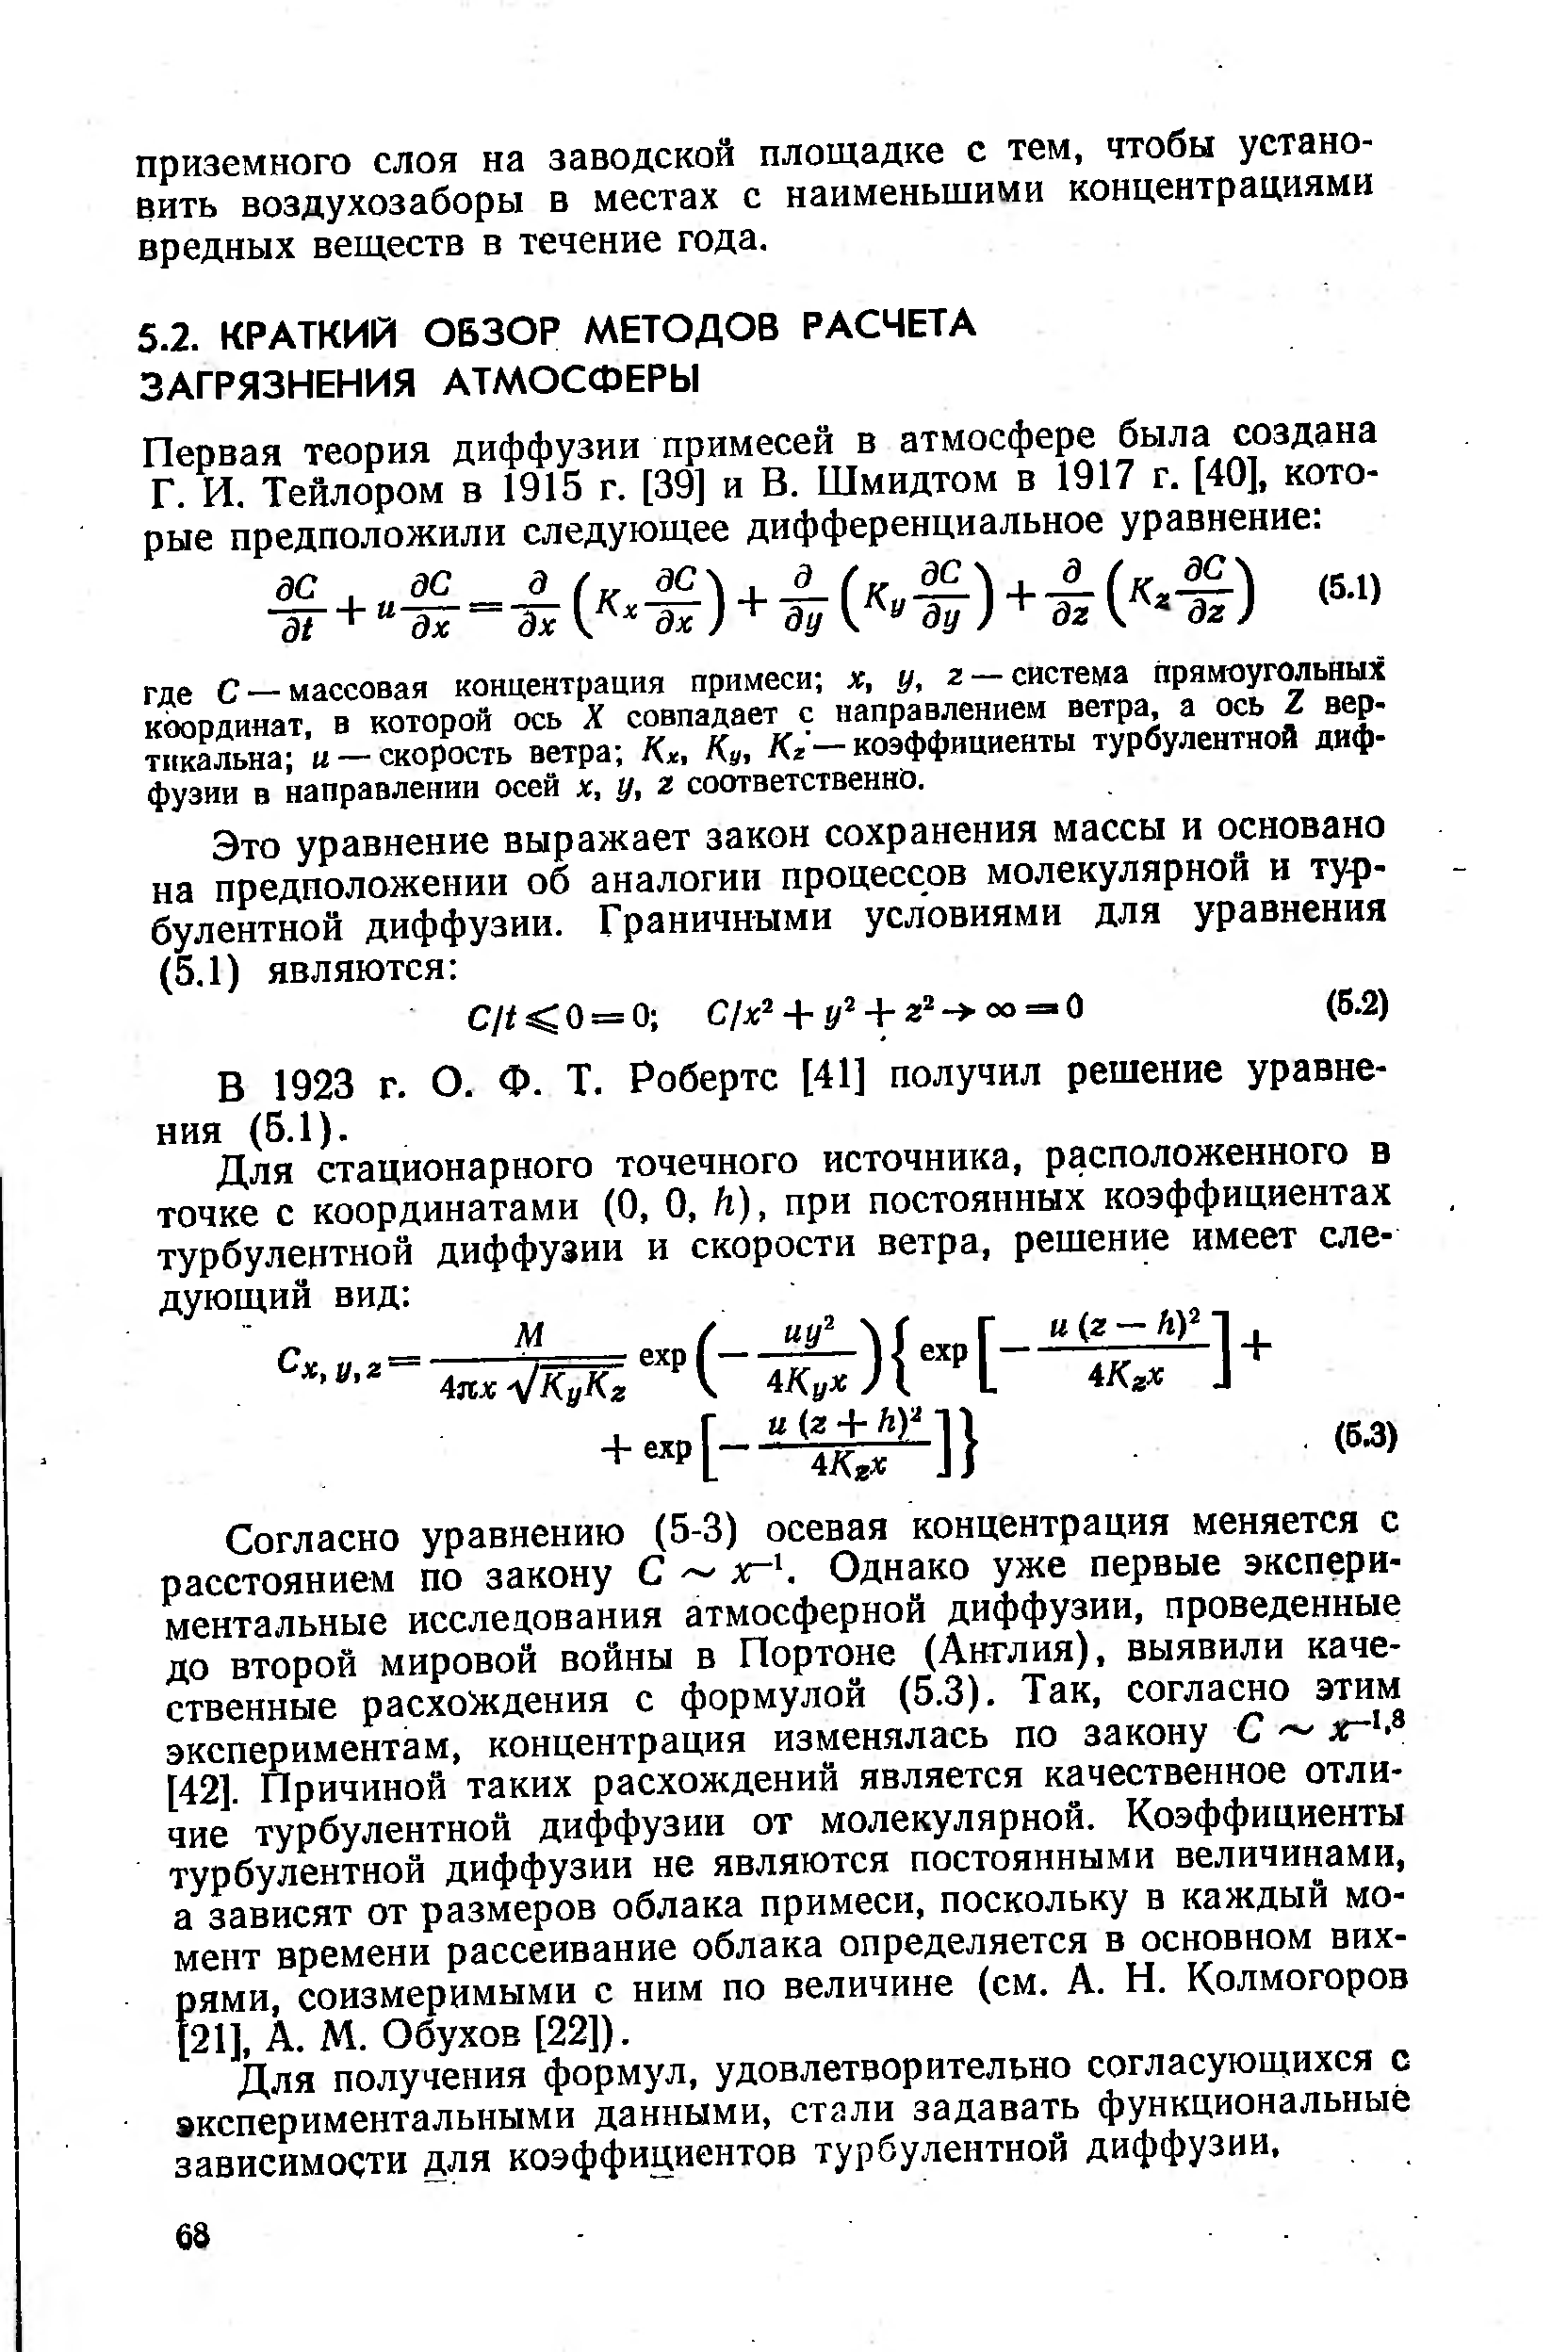 В 1923 г. О. Ф. Т. Робертс [41] получил решение уравнения (5.1).